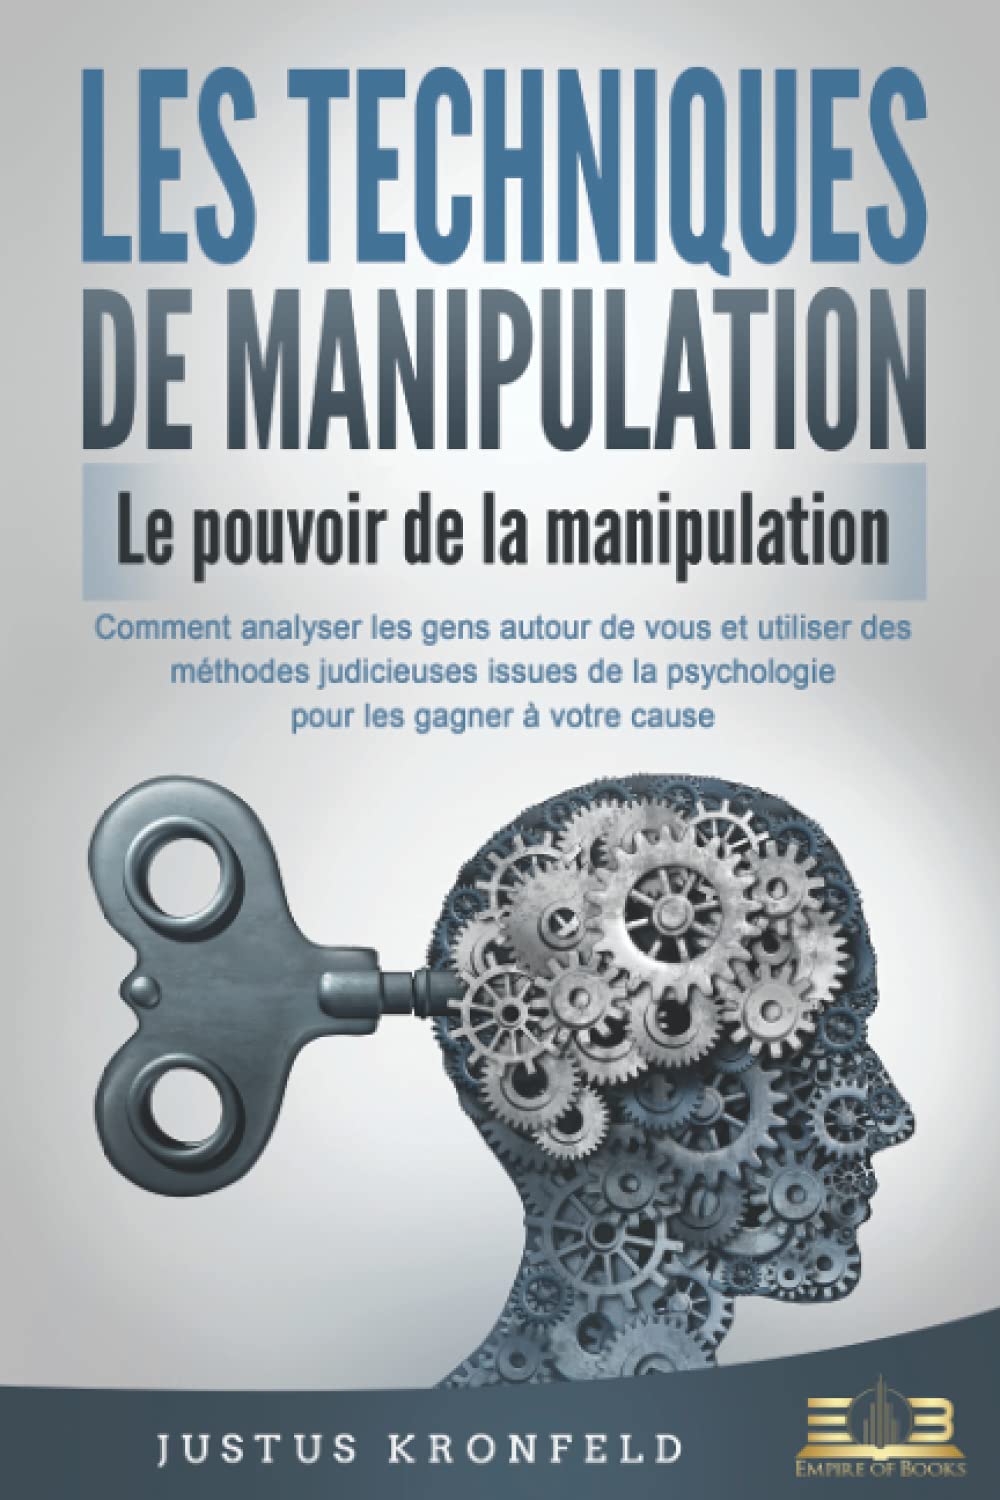 LES TECHNIQUES DE MANIPULATION - Le pouvoir de la manipulation: Comment analyser les gens autour de vous et utiliser des méthodes judicieuses issues de la psychologie pour les gagner à votre cause